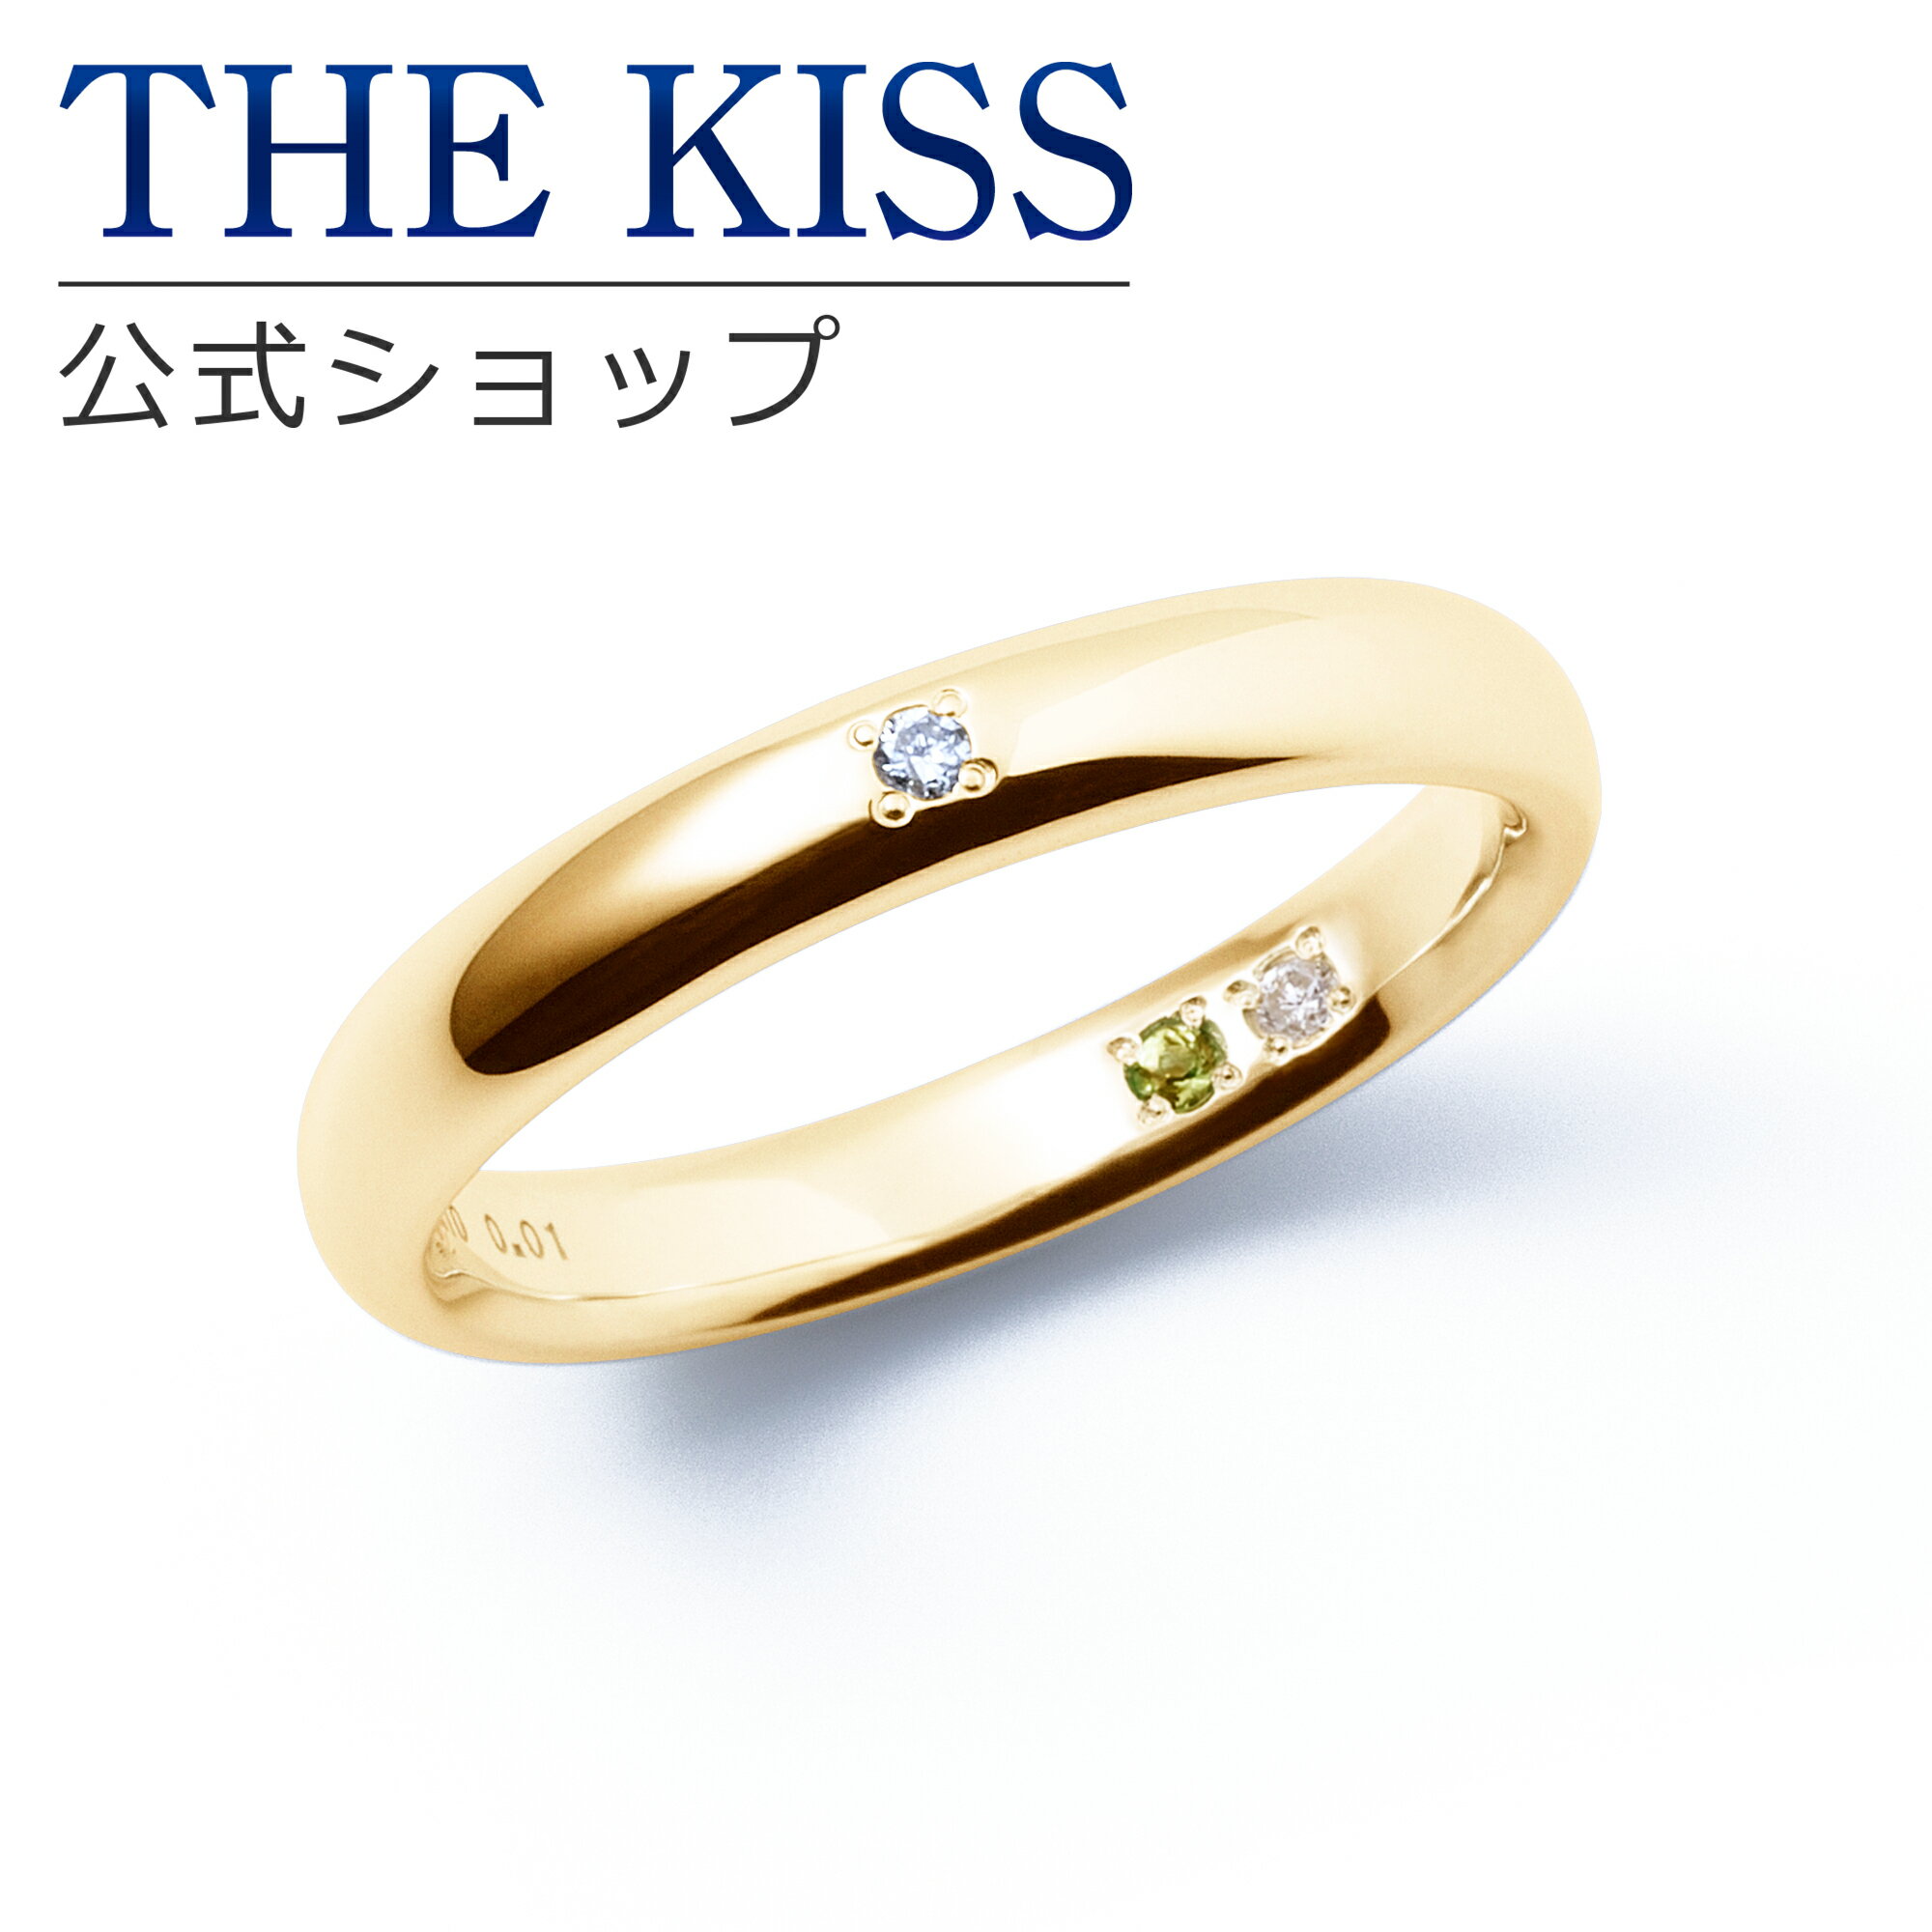 【ラッピング無料】【刻印無料】【THE KISS Anniversary】 THE KISS 公式ショップ K10 イエローゴールド マリッジ リング 結婚指輪 ペアリング レディース 単品 yg カップル 人気 ジュエリーブランド THEKISS ザキッス 指輪 7581122041A シンプル 女性 ブライダル